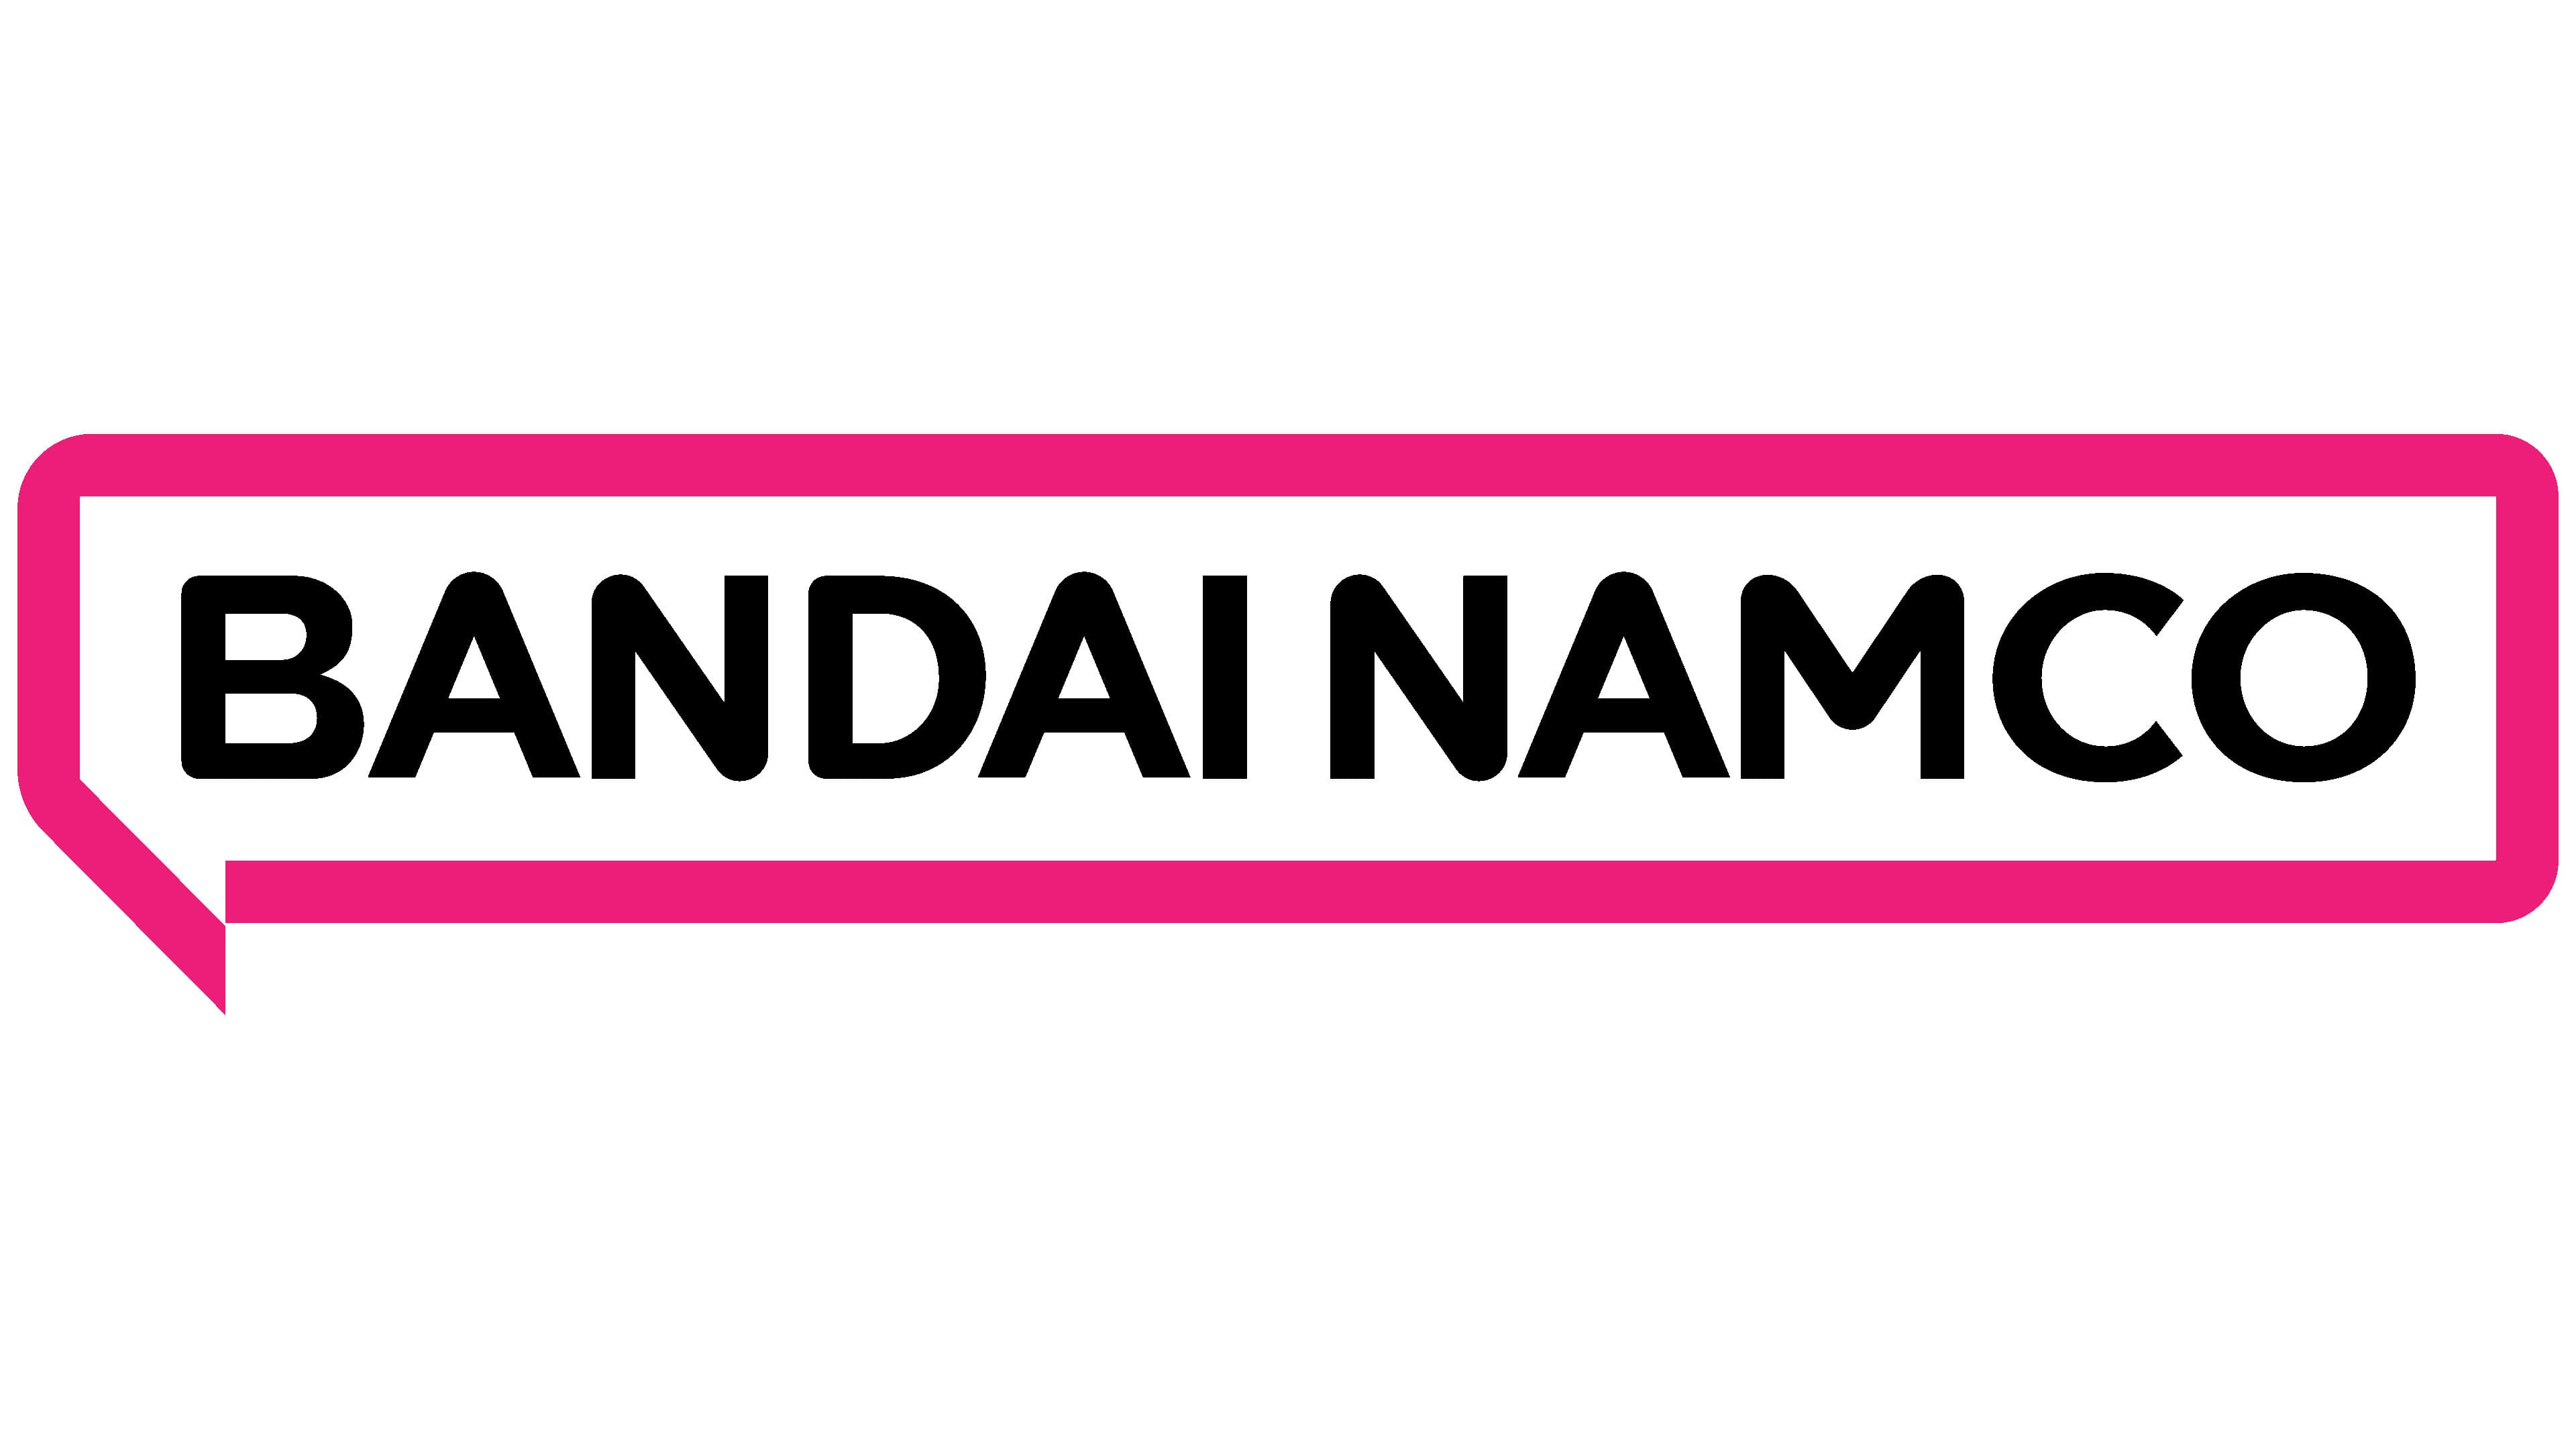 Imagen para Bandai Namco confirma haber sido víctima de un hackeo